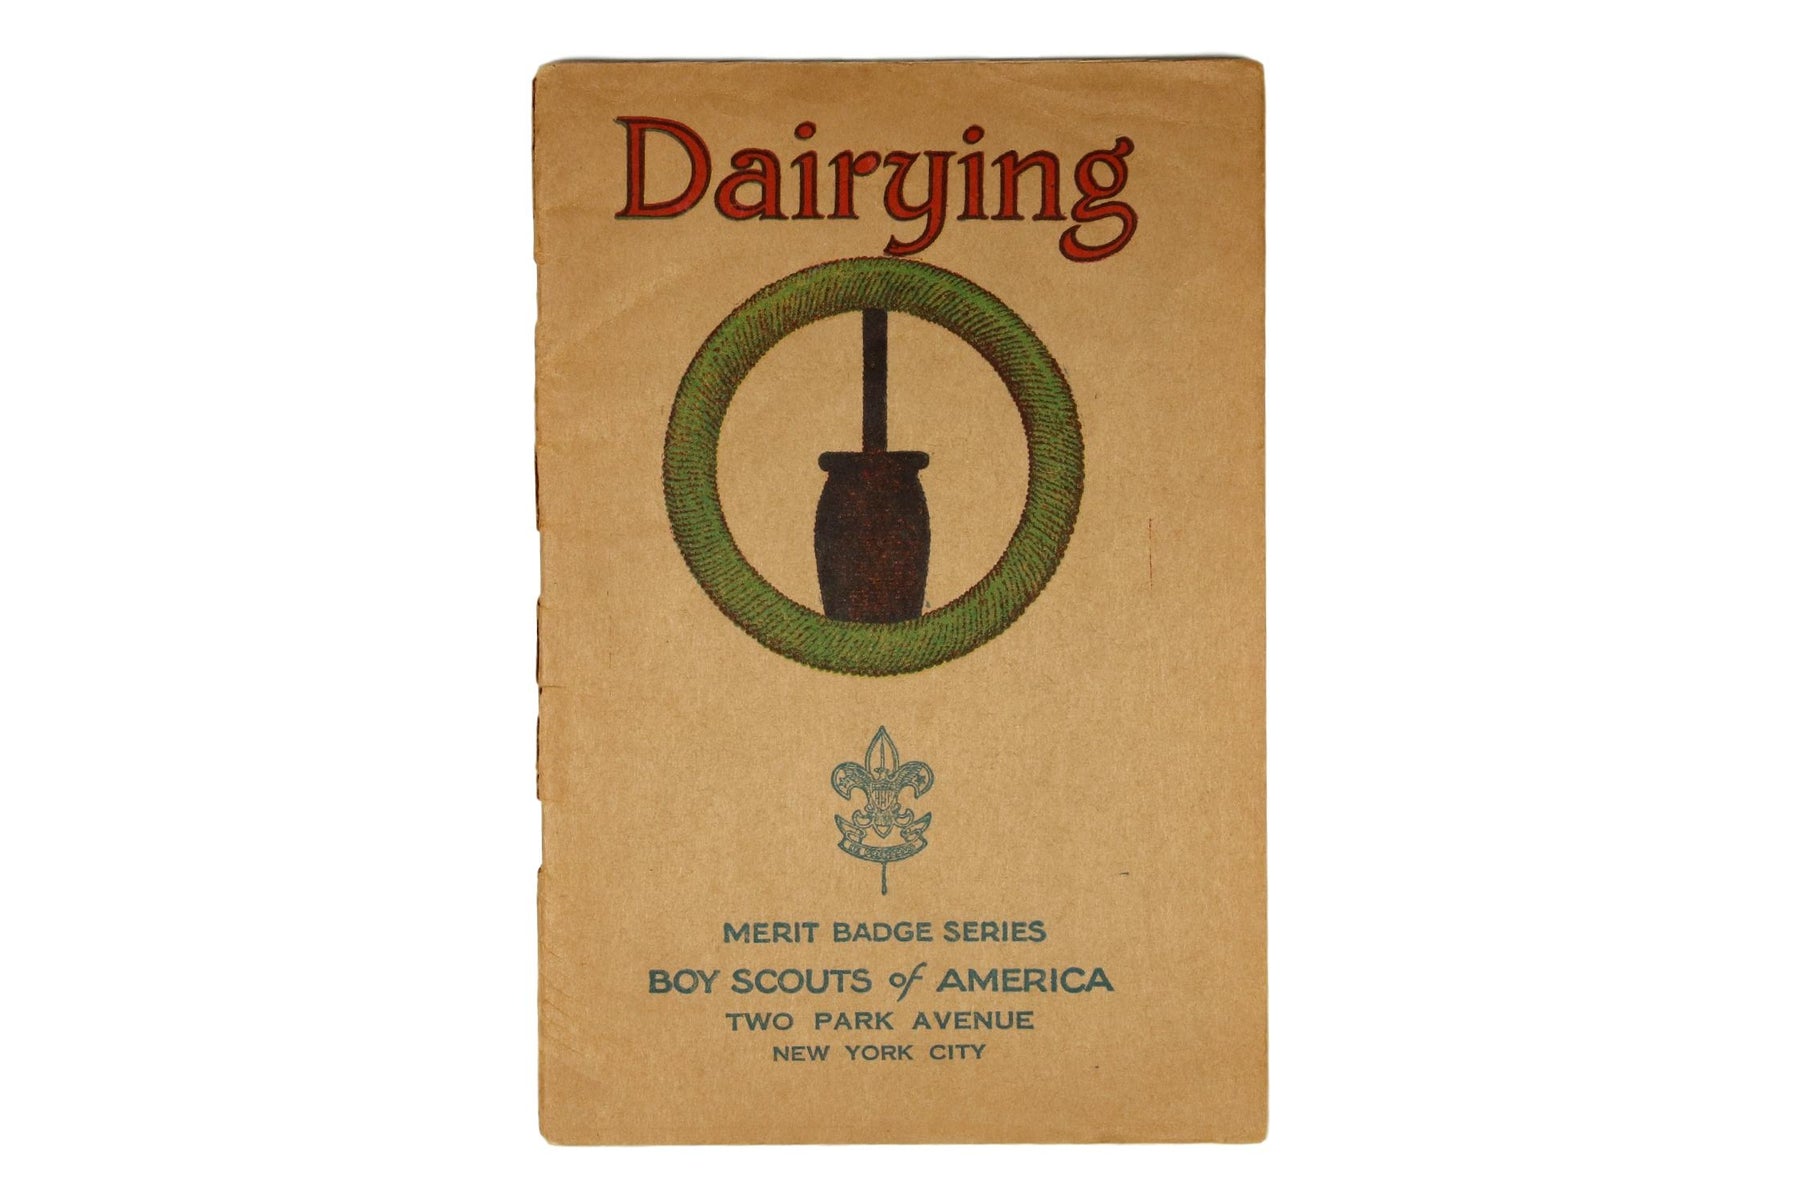 Dairying MBP 1936